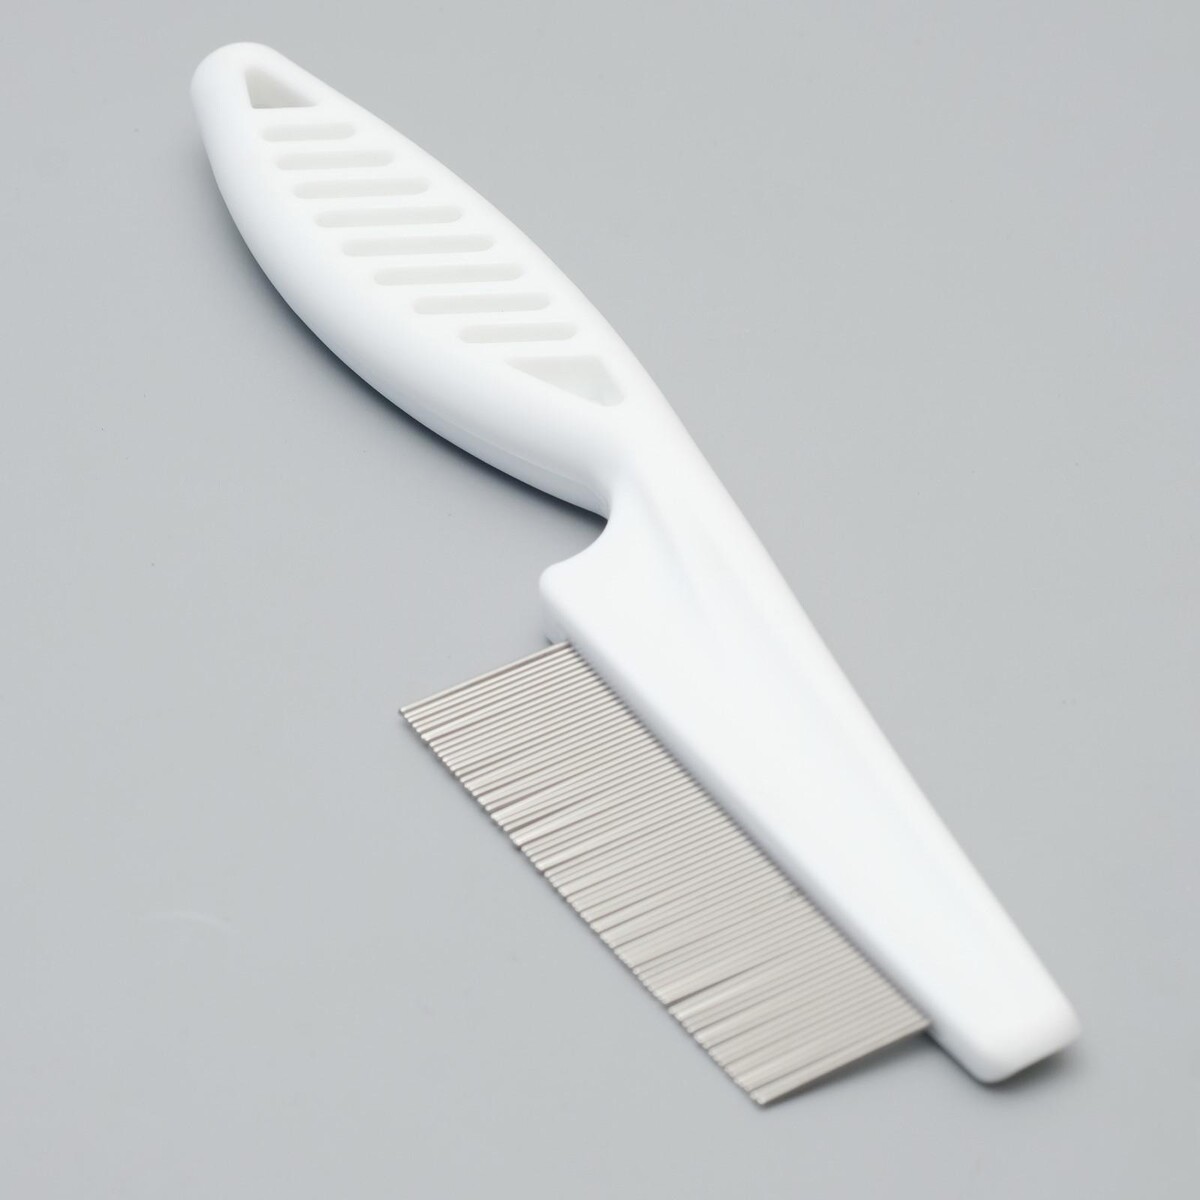 Расческа с частыми зубьями, 18 см, пластиковая ручка, белая